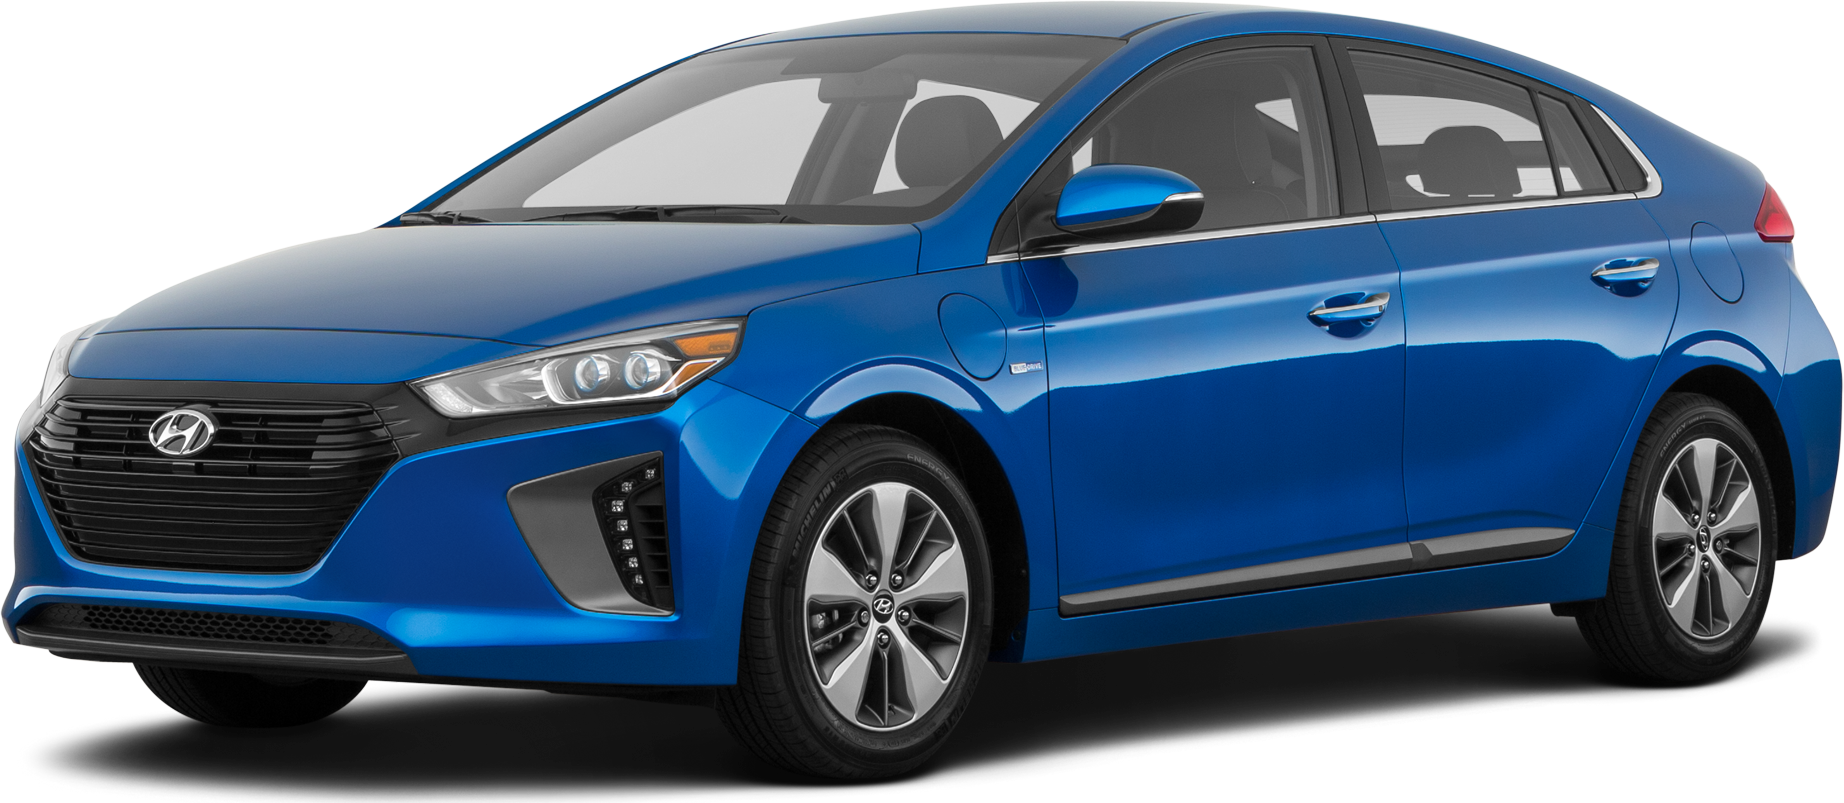 New Hyundai Ioniq - Onc Car Three Options - Hybrid - Plug-in - Electric